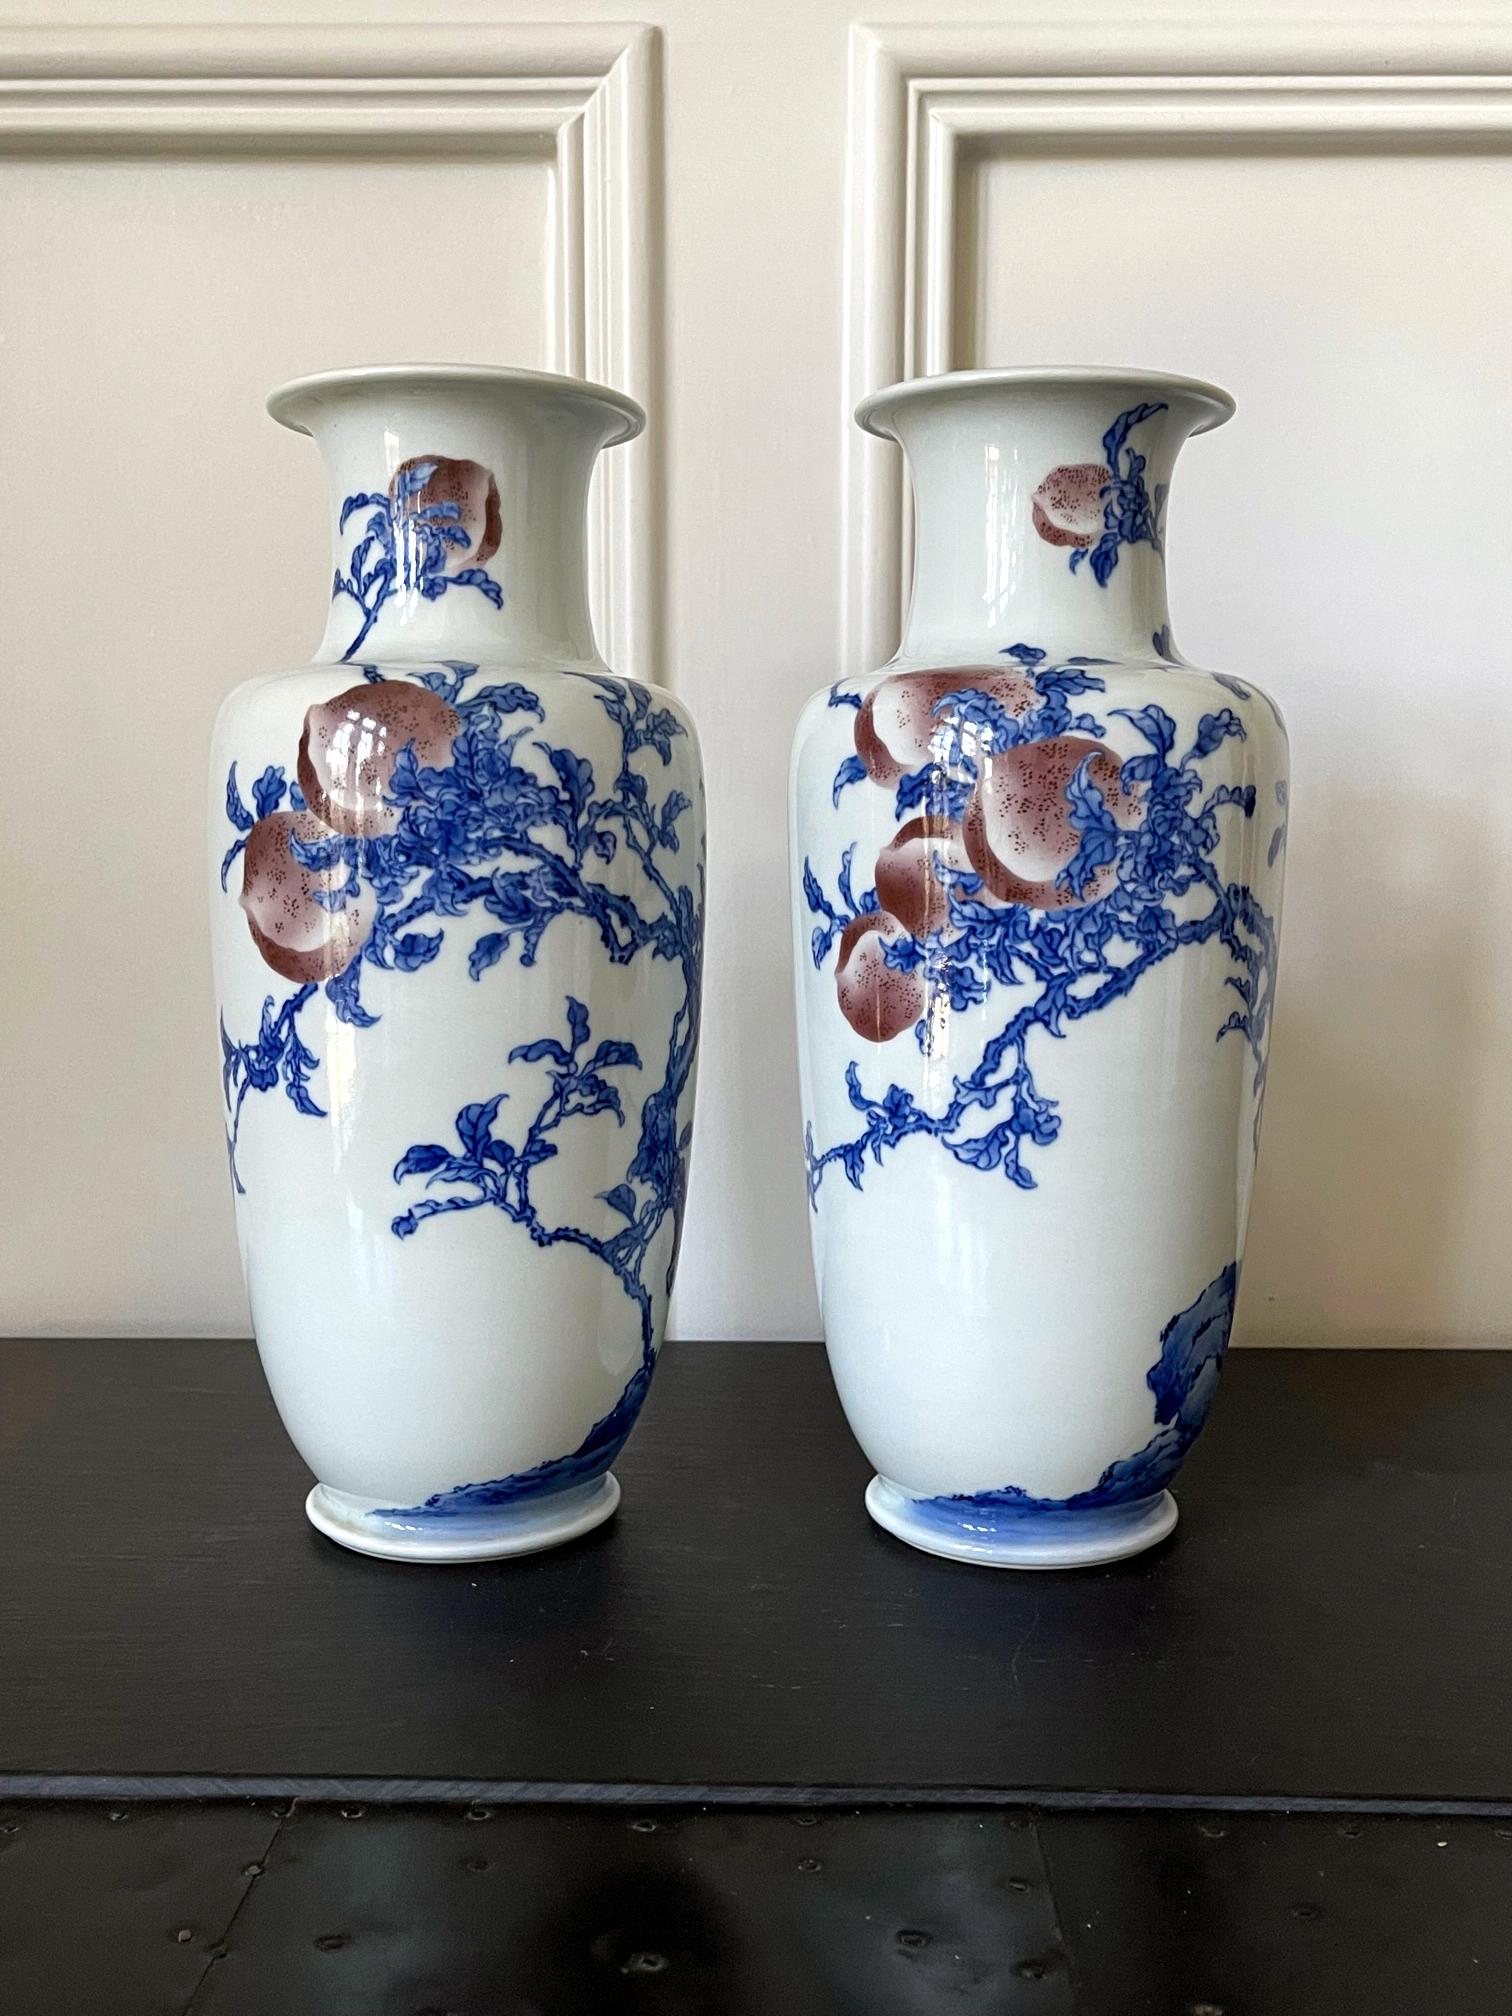 Ein Paar Porzellanvasen in klassischer Form A, verziert mit Unterglasurblau- und Kupferrotmalerei des kaiserlichen Töpfers Makuzu Kozan. Makuzu, auch bekannt als Miyagawa Kozan (1842-1916), war einer der bekanntesten und am meisten gesammelten